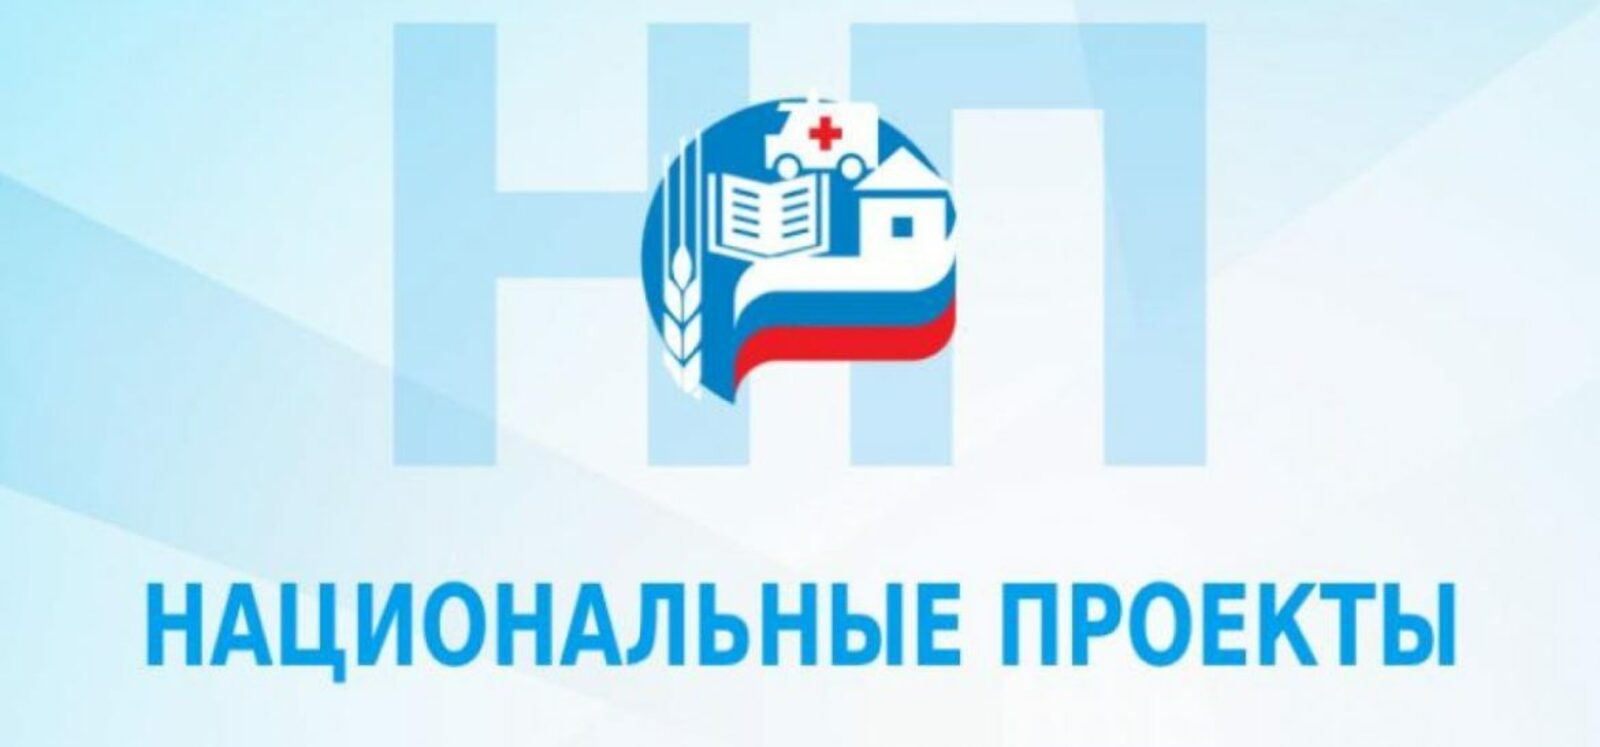 Благодаря нацпроекту жителям Башкортостана стало легче записаться на прием к врачу